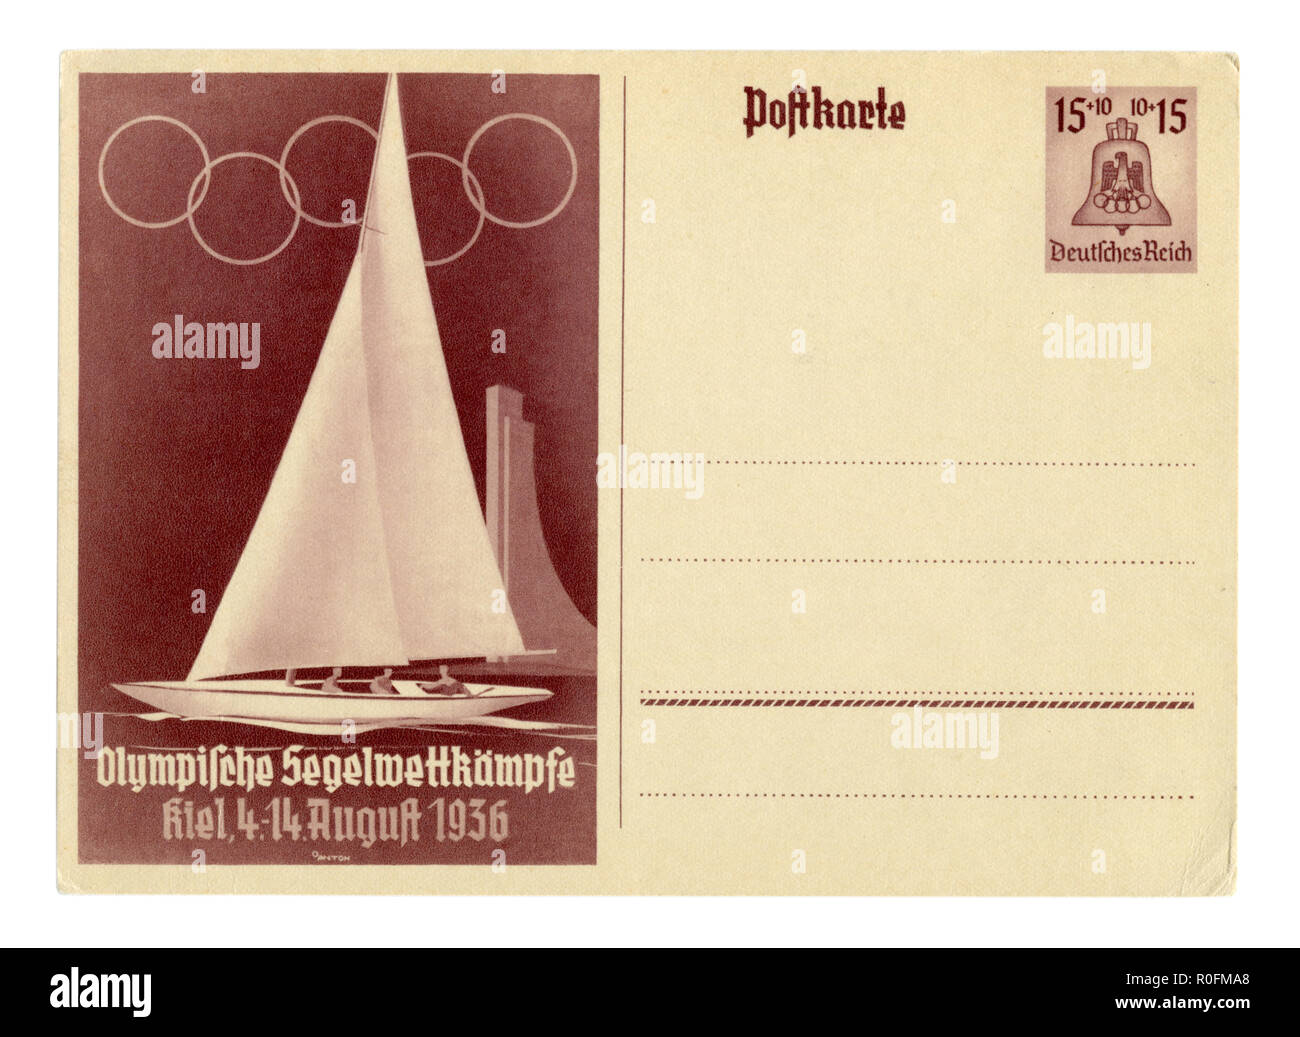 Tarjeta postal histórica alemana: 11 de los Juegos Olímpicos de Verano de 1936 en Berlín, deportes acuáticos, de la ciudad de Kiel, yate, condiciones especiales de cancelación, Alemania, el Tercer Reich Foto de stock